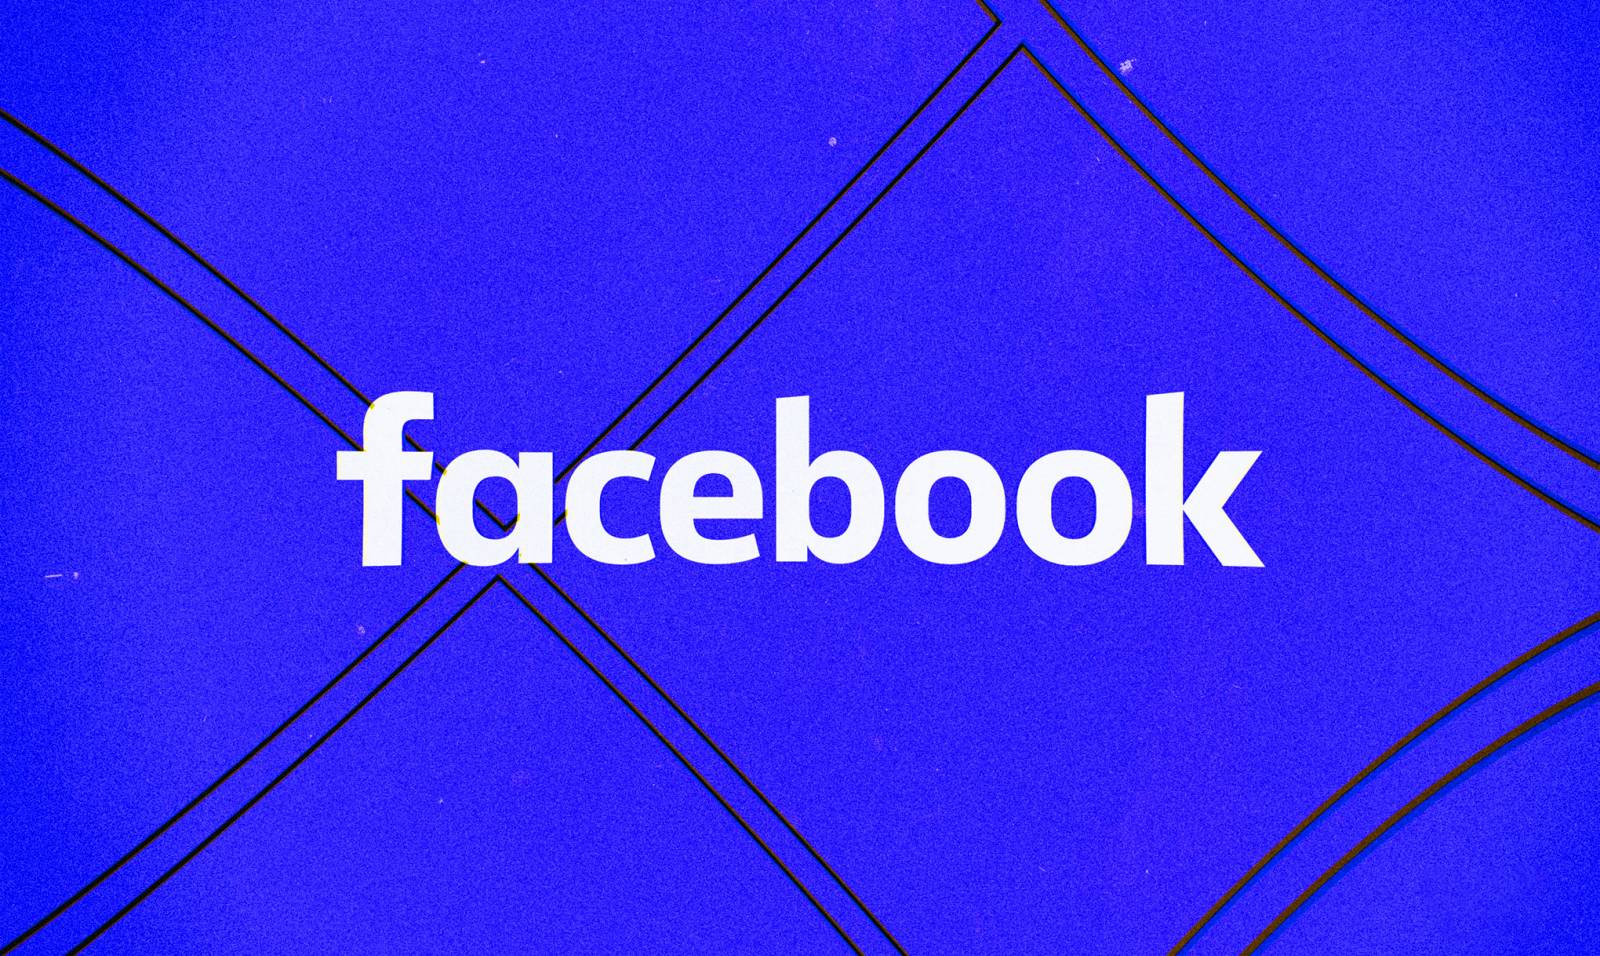 Wydano nową aktualizację Facebooka dla telefonów, jakie zmiany wprowadza